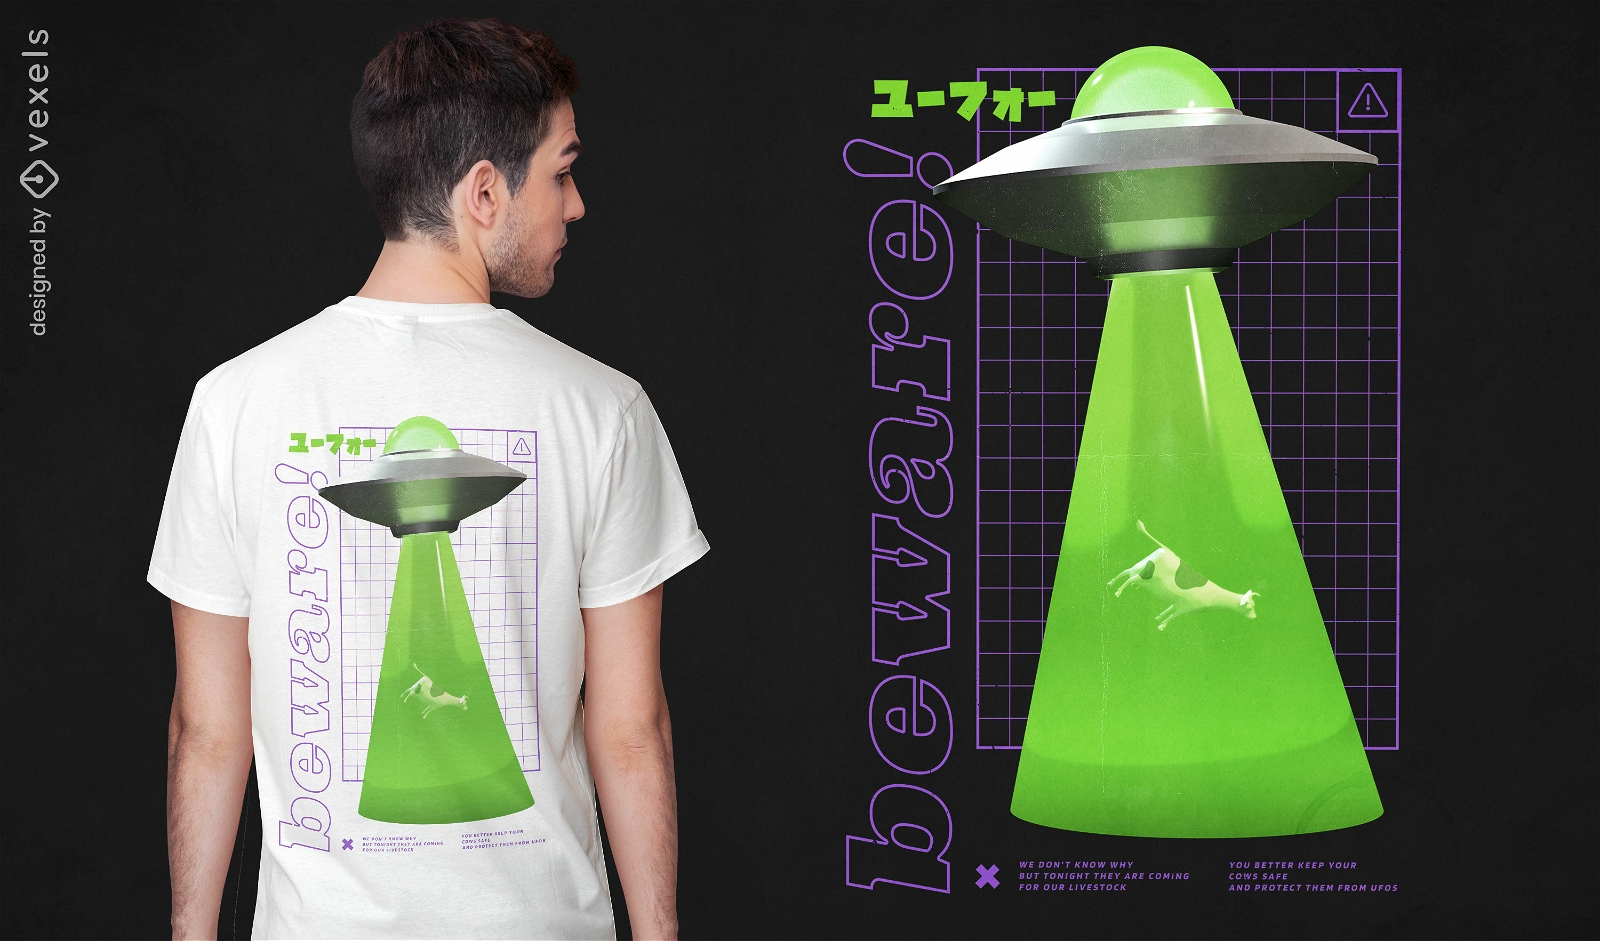 Nave espacial alienígena y camiseta de vaca psd